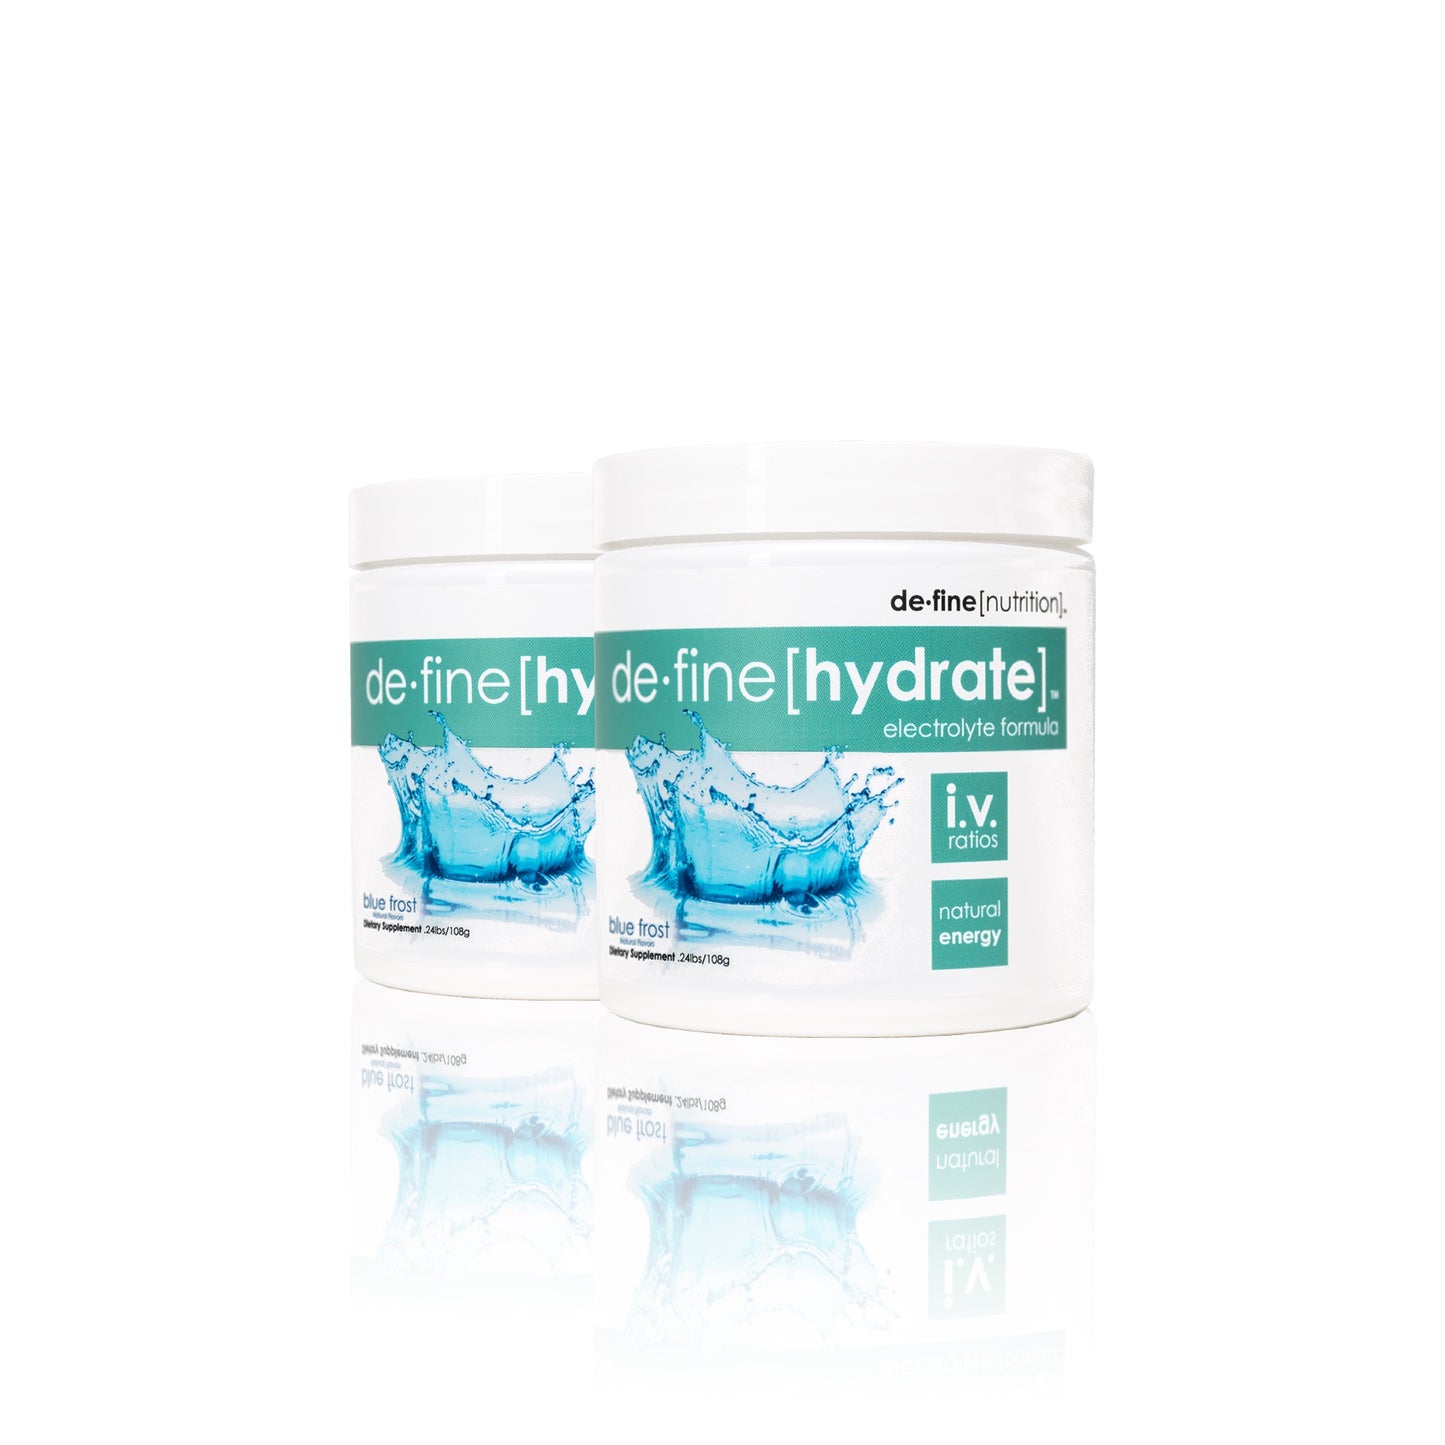 define[hydrate] 2 pack